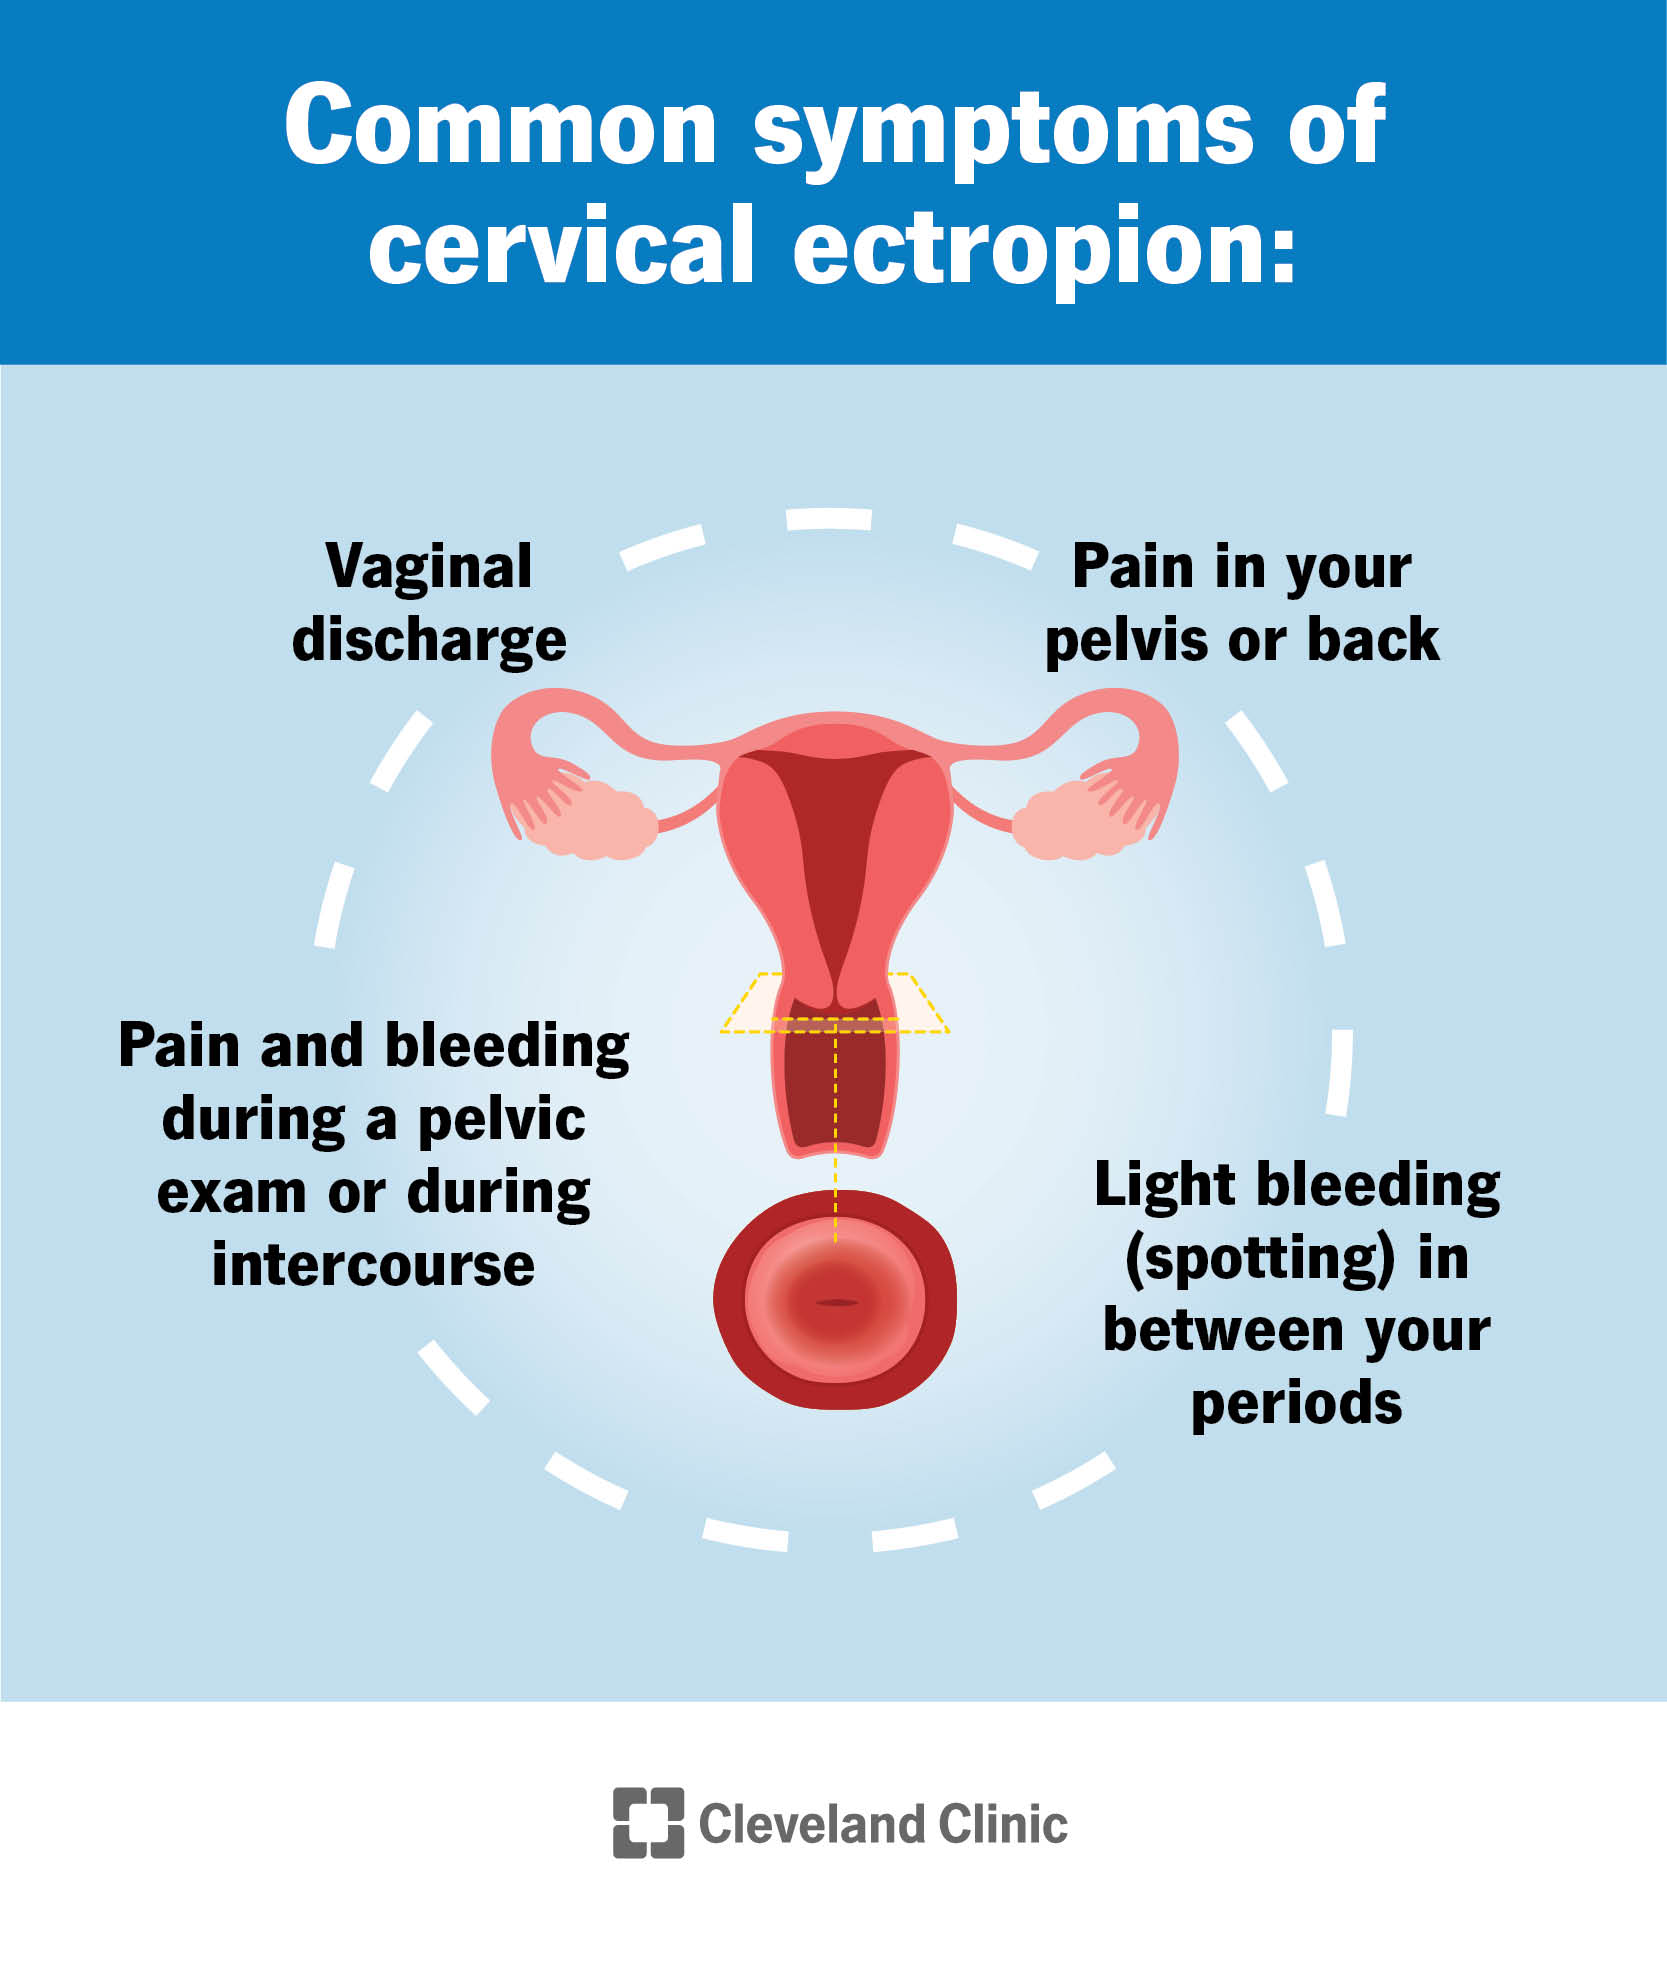 Sistema riproduttivo di una persona assegnata come femmina alla nascita, con particolare attenzione alla cervice.  Il testo di accompagnamento riassume i sintomi comuni dell'ectropion cervicale.